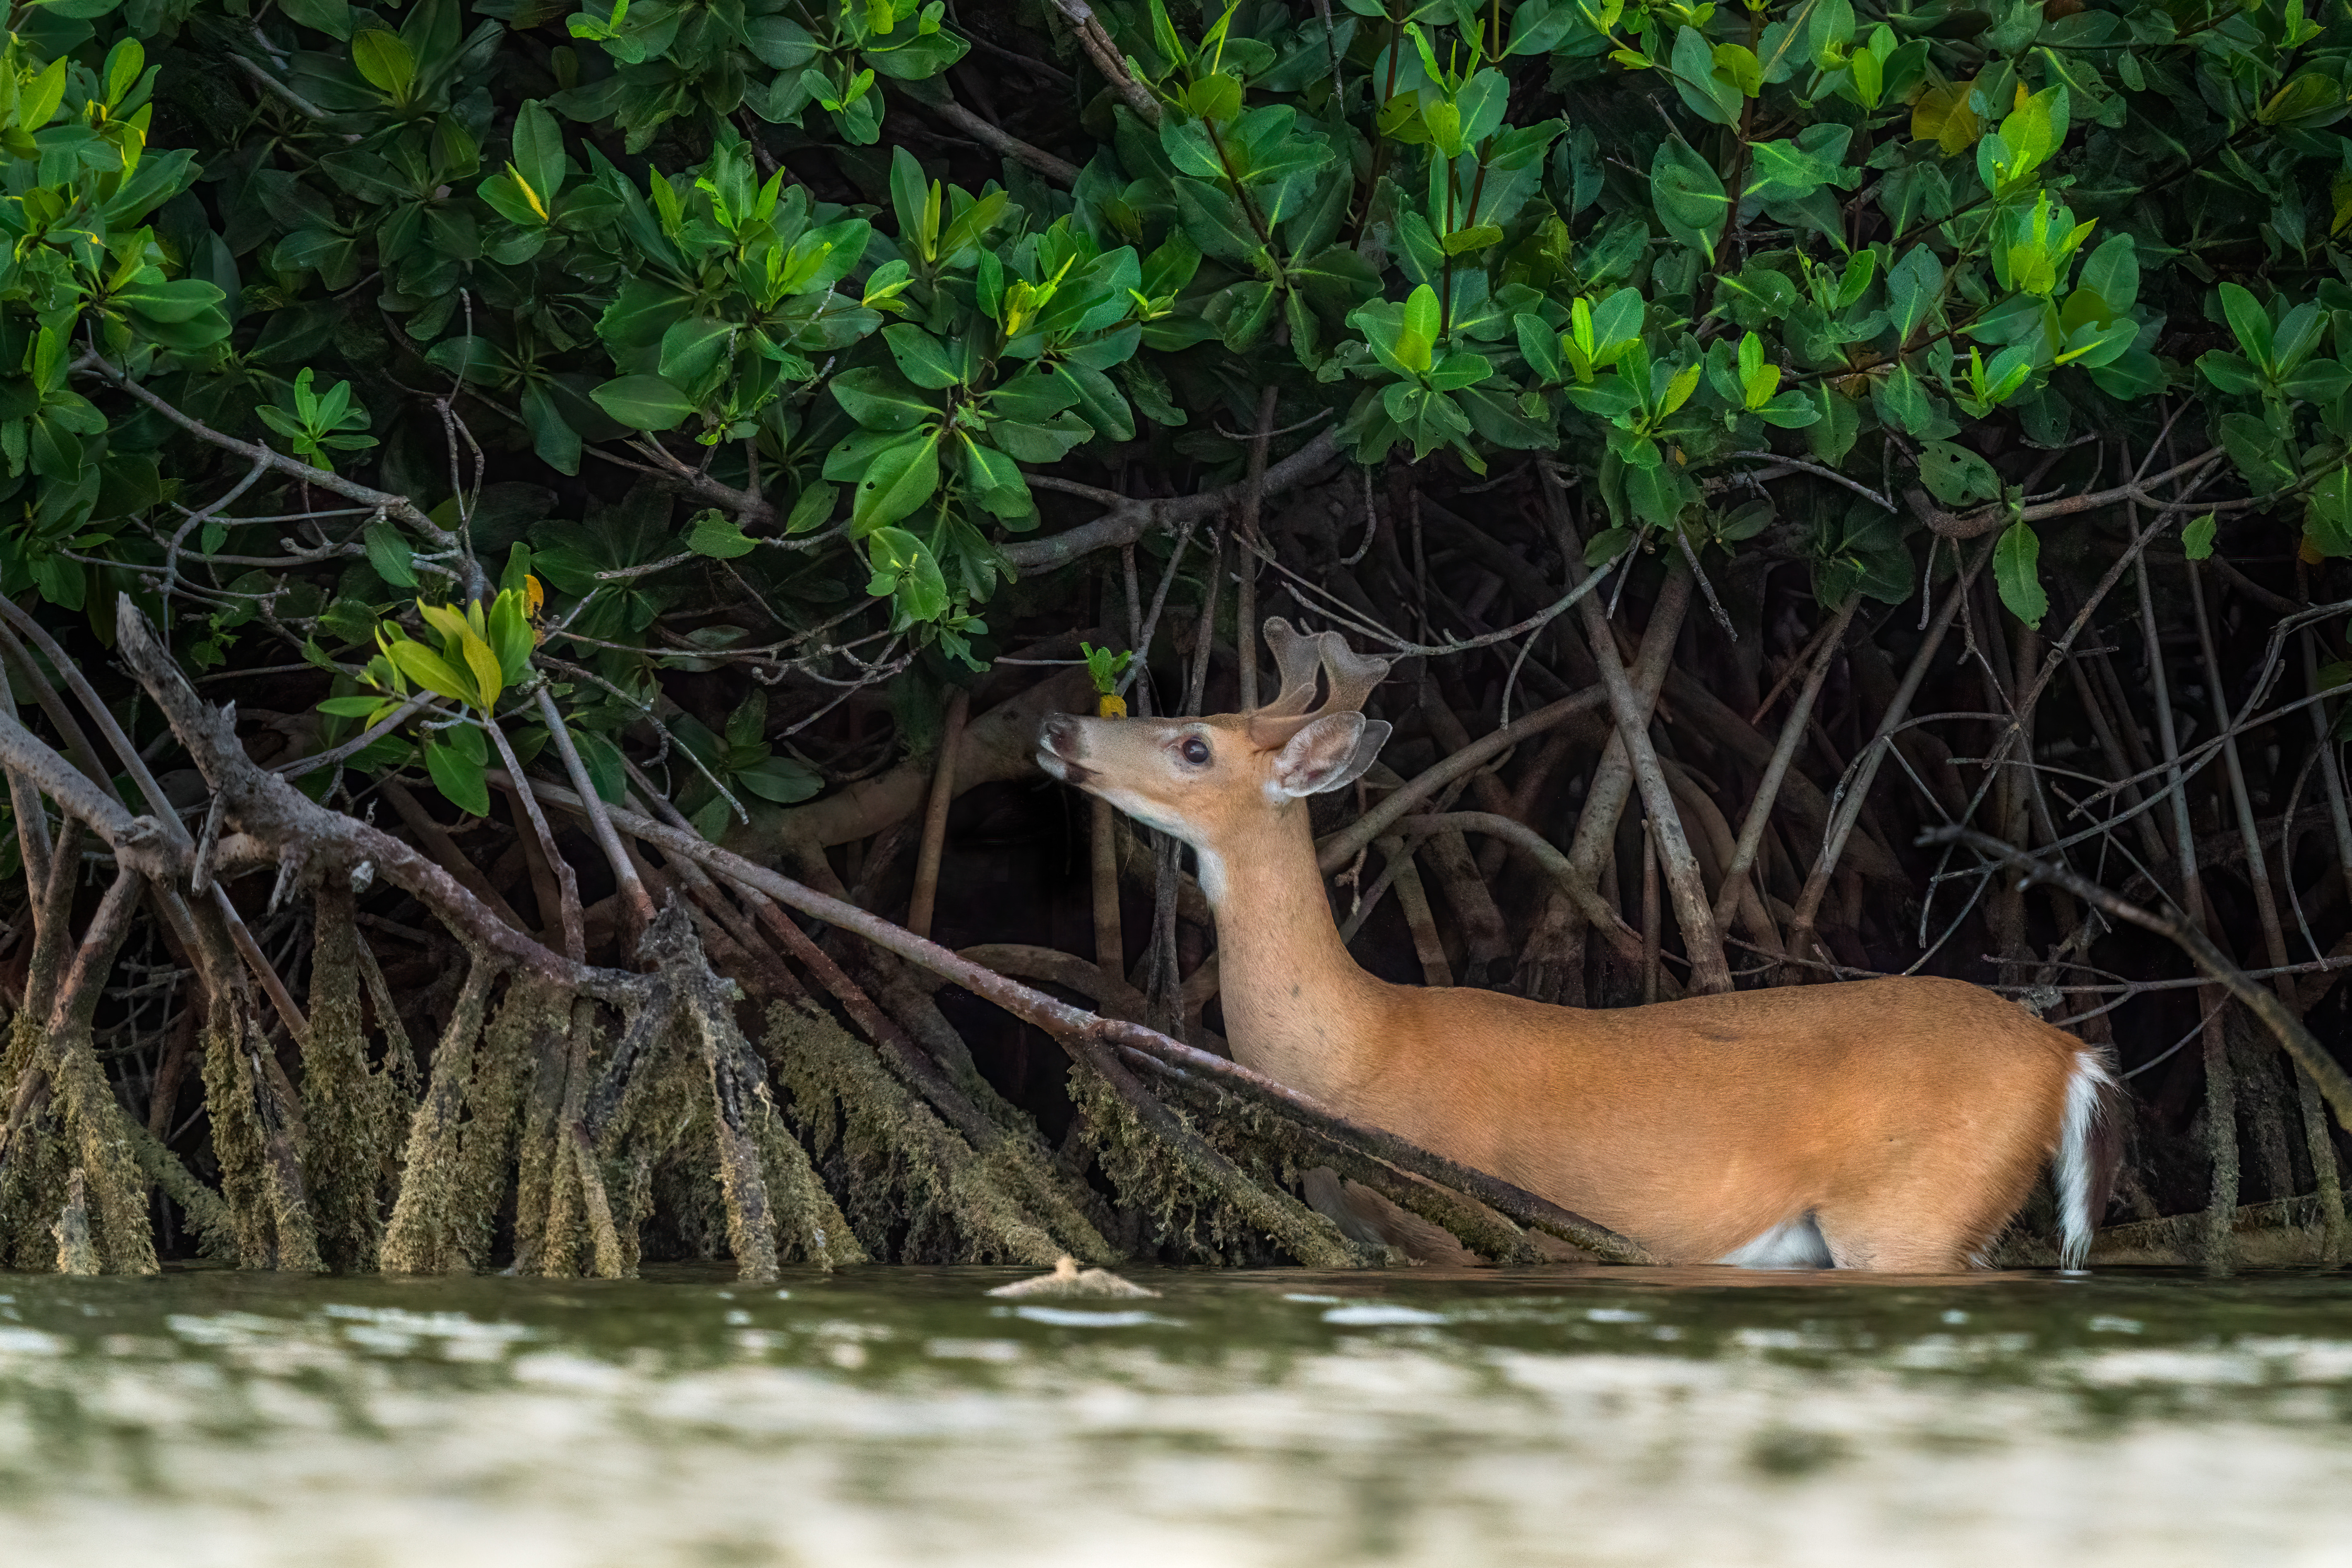 A Key deer buck feeding on red mangrove leaves in the water.